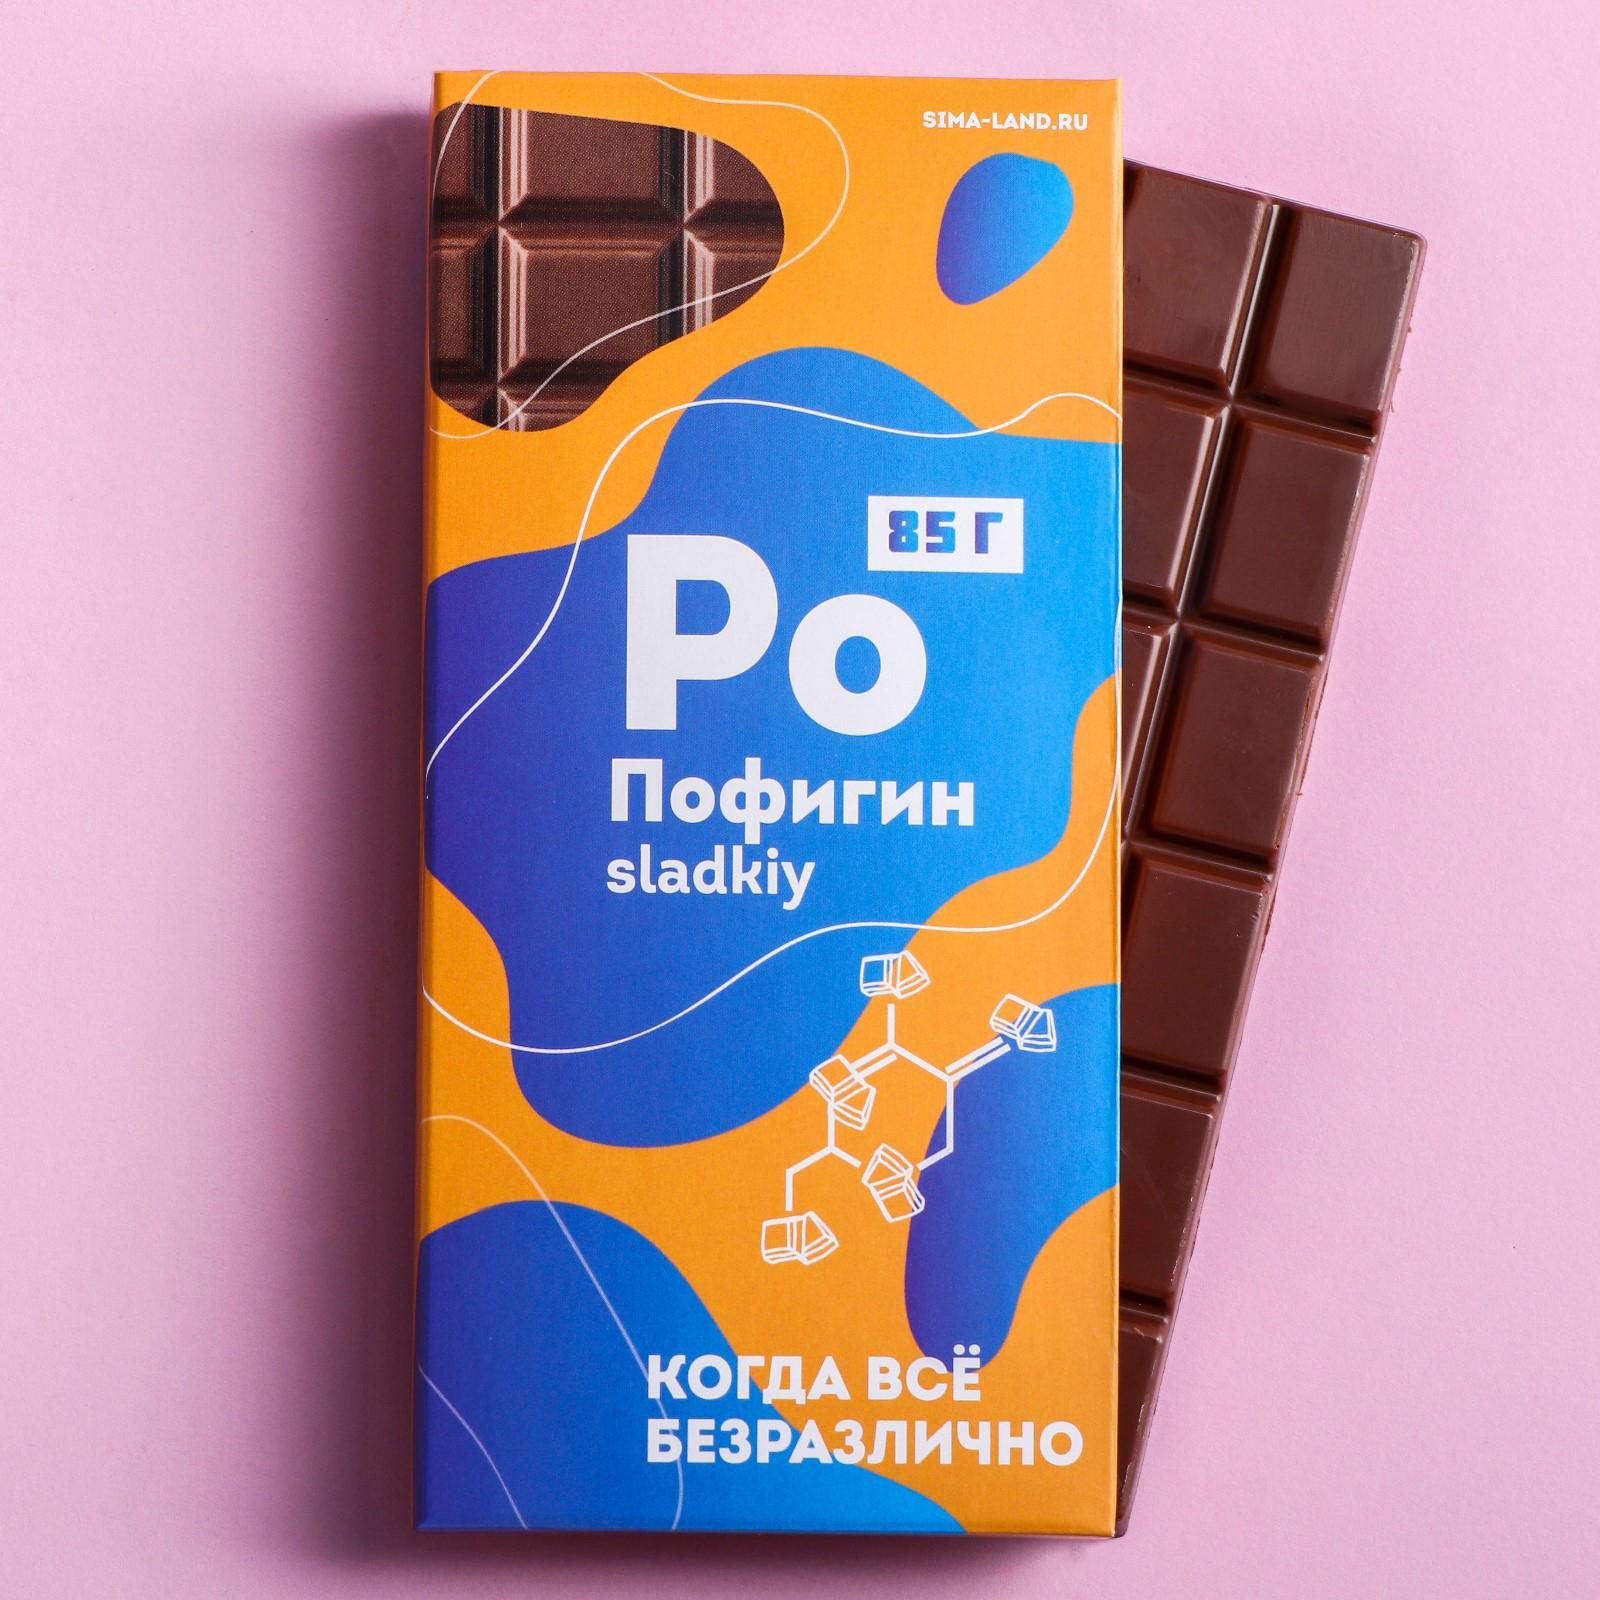 Шоколад Пофигин 85гр